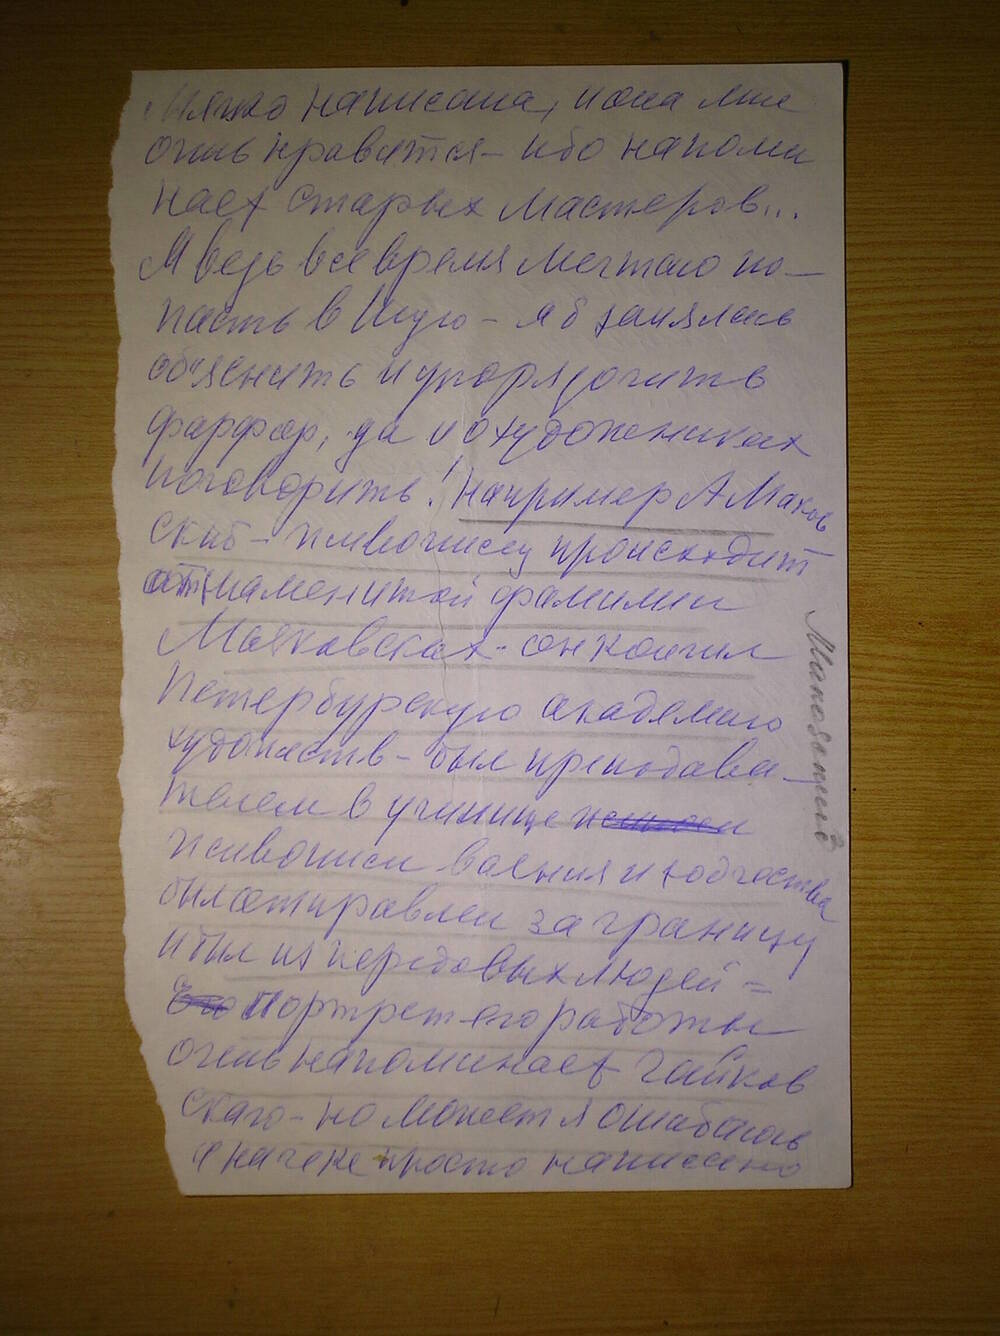 Фрагмент письма от Мазуровой Е.Я. Комаровой Г.Н. делового характера. Г. Москва.